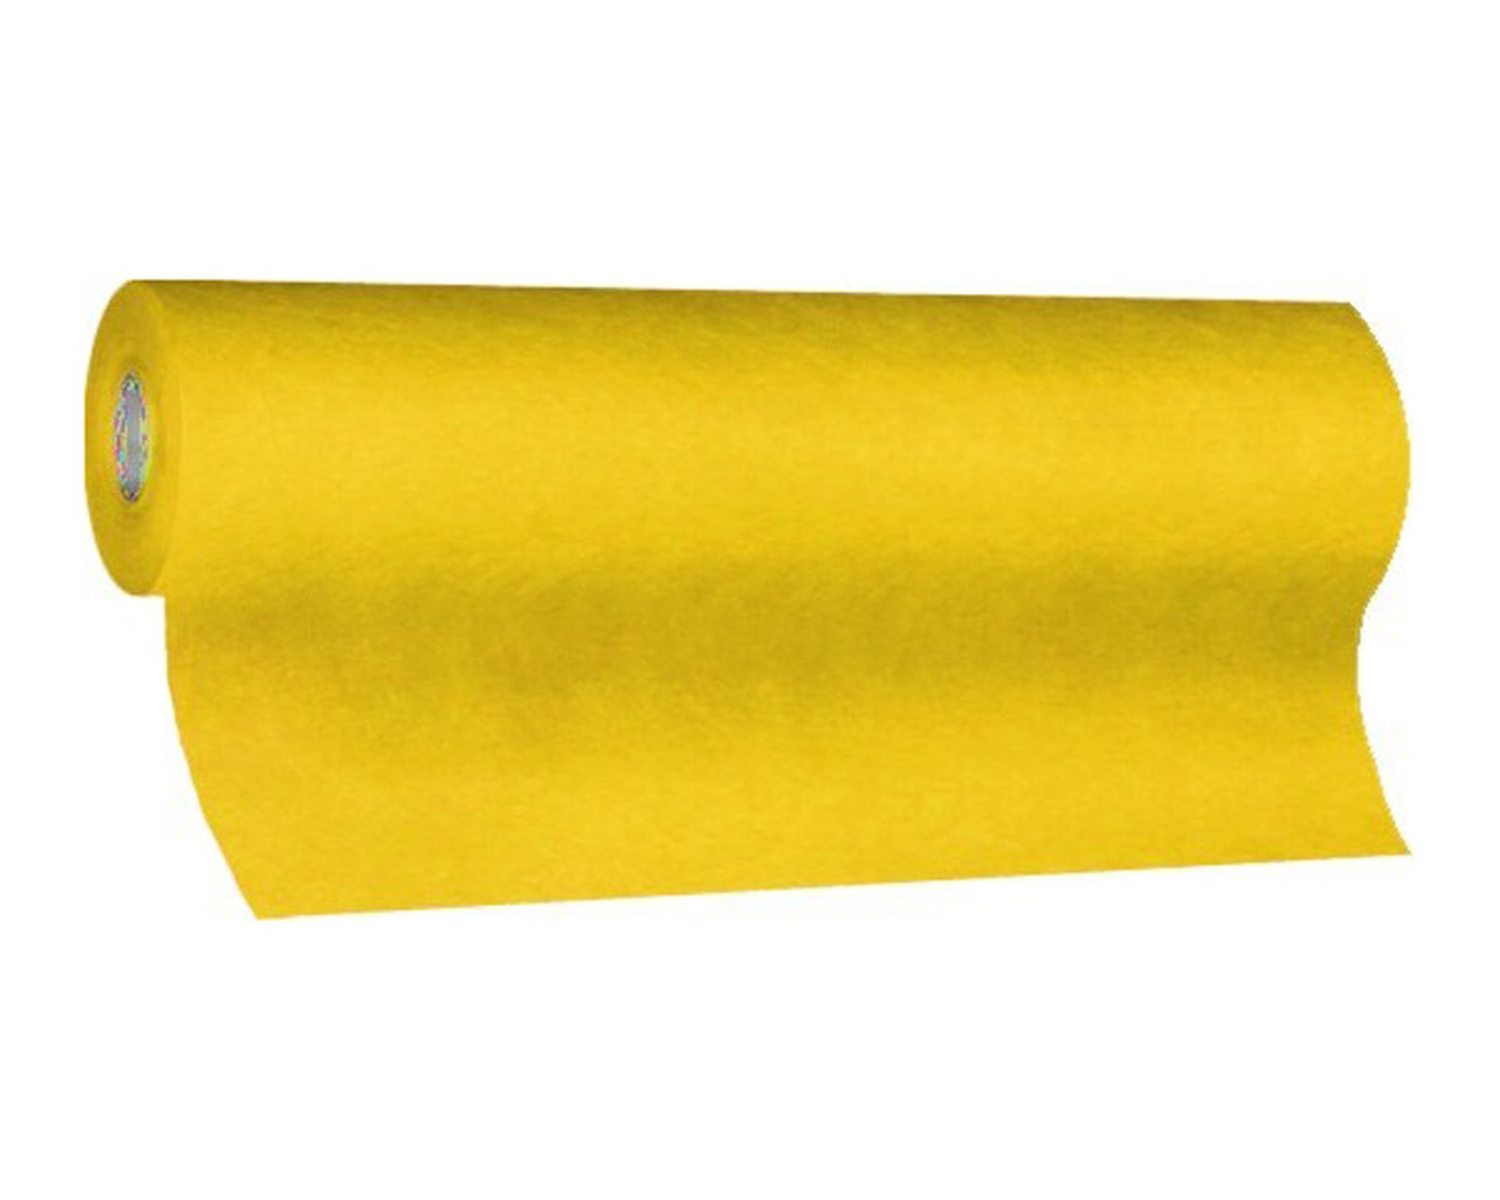 Tischlufer Airlaid 24m x 40cm - alle 120cm perforiert, stoffhnlich, gelb